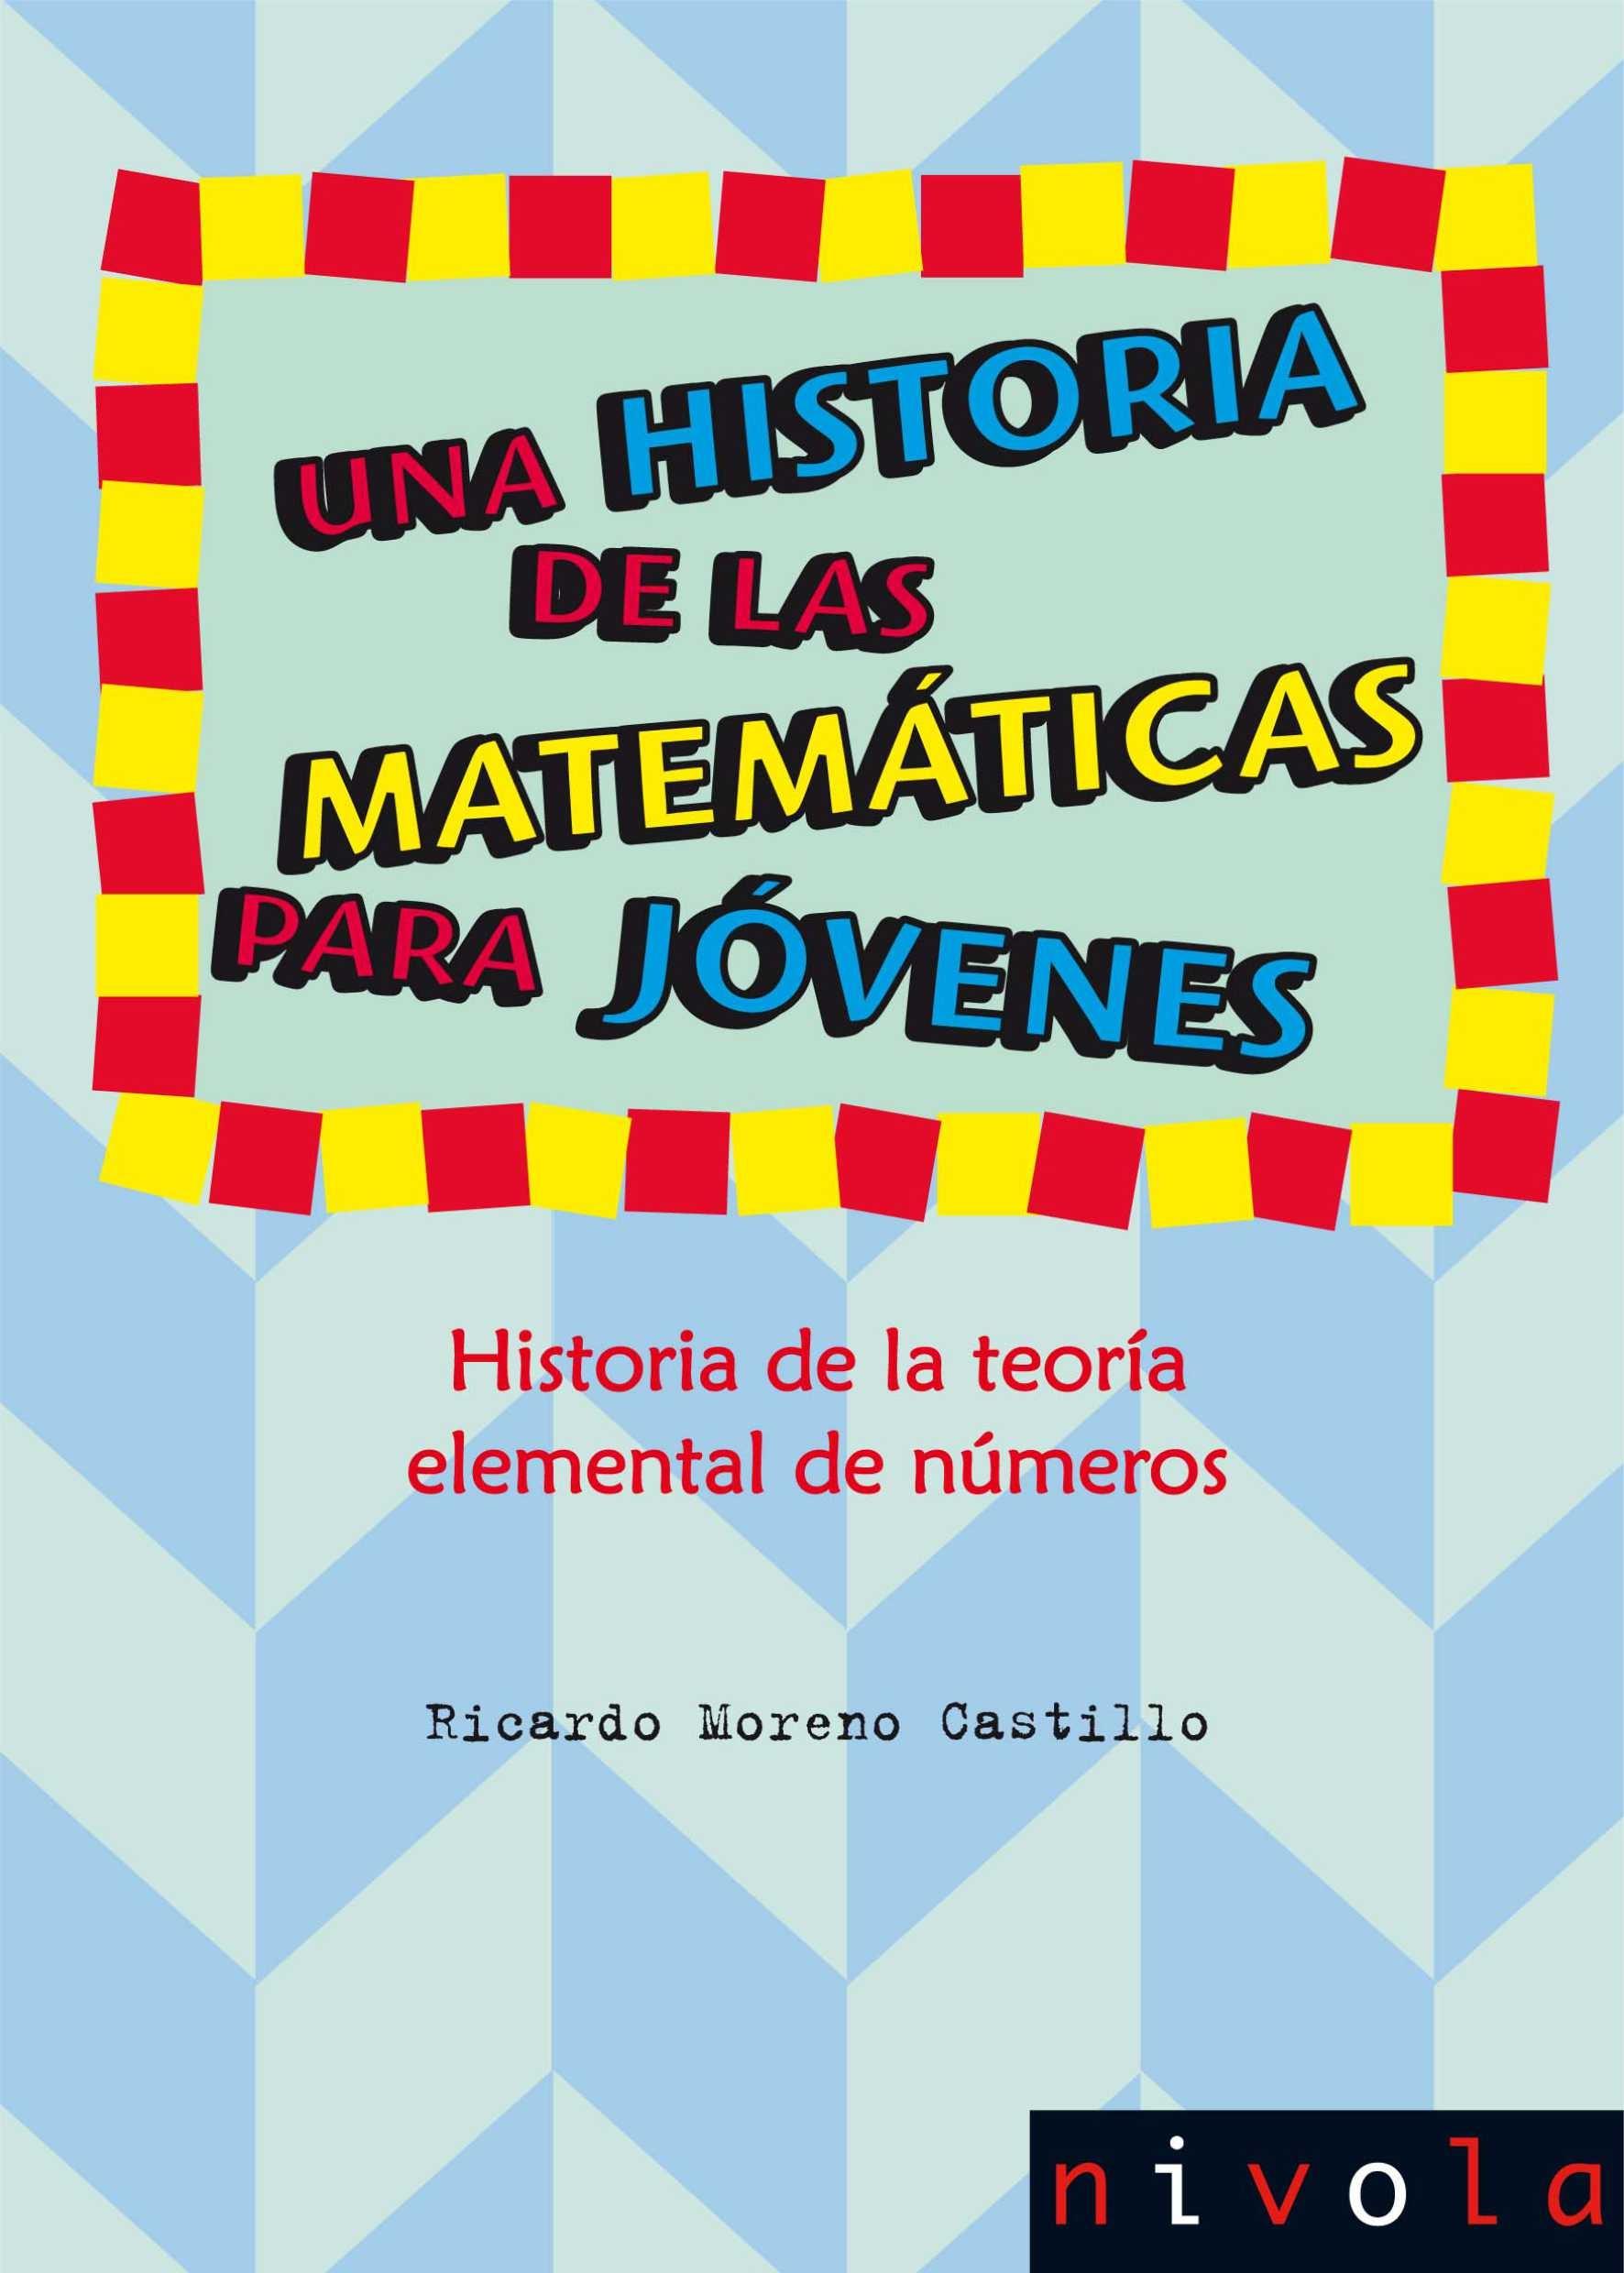 Una historia de las matemáticas para jóvenes IV "Historia de la teoría elemental de los números"